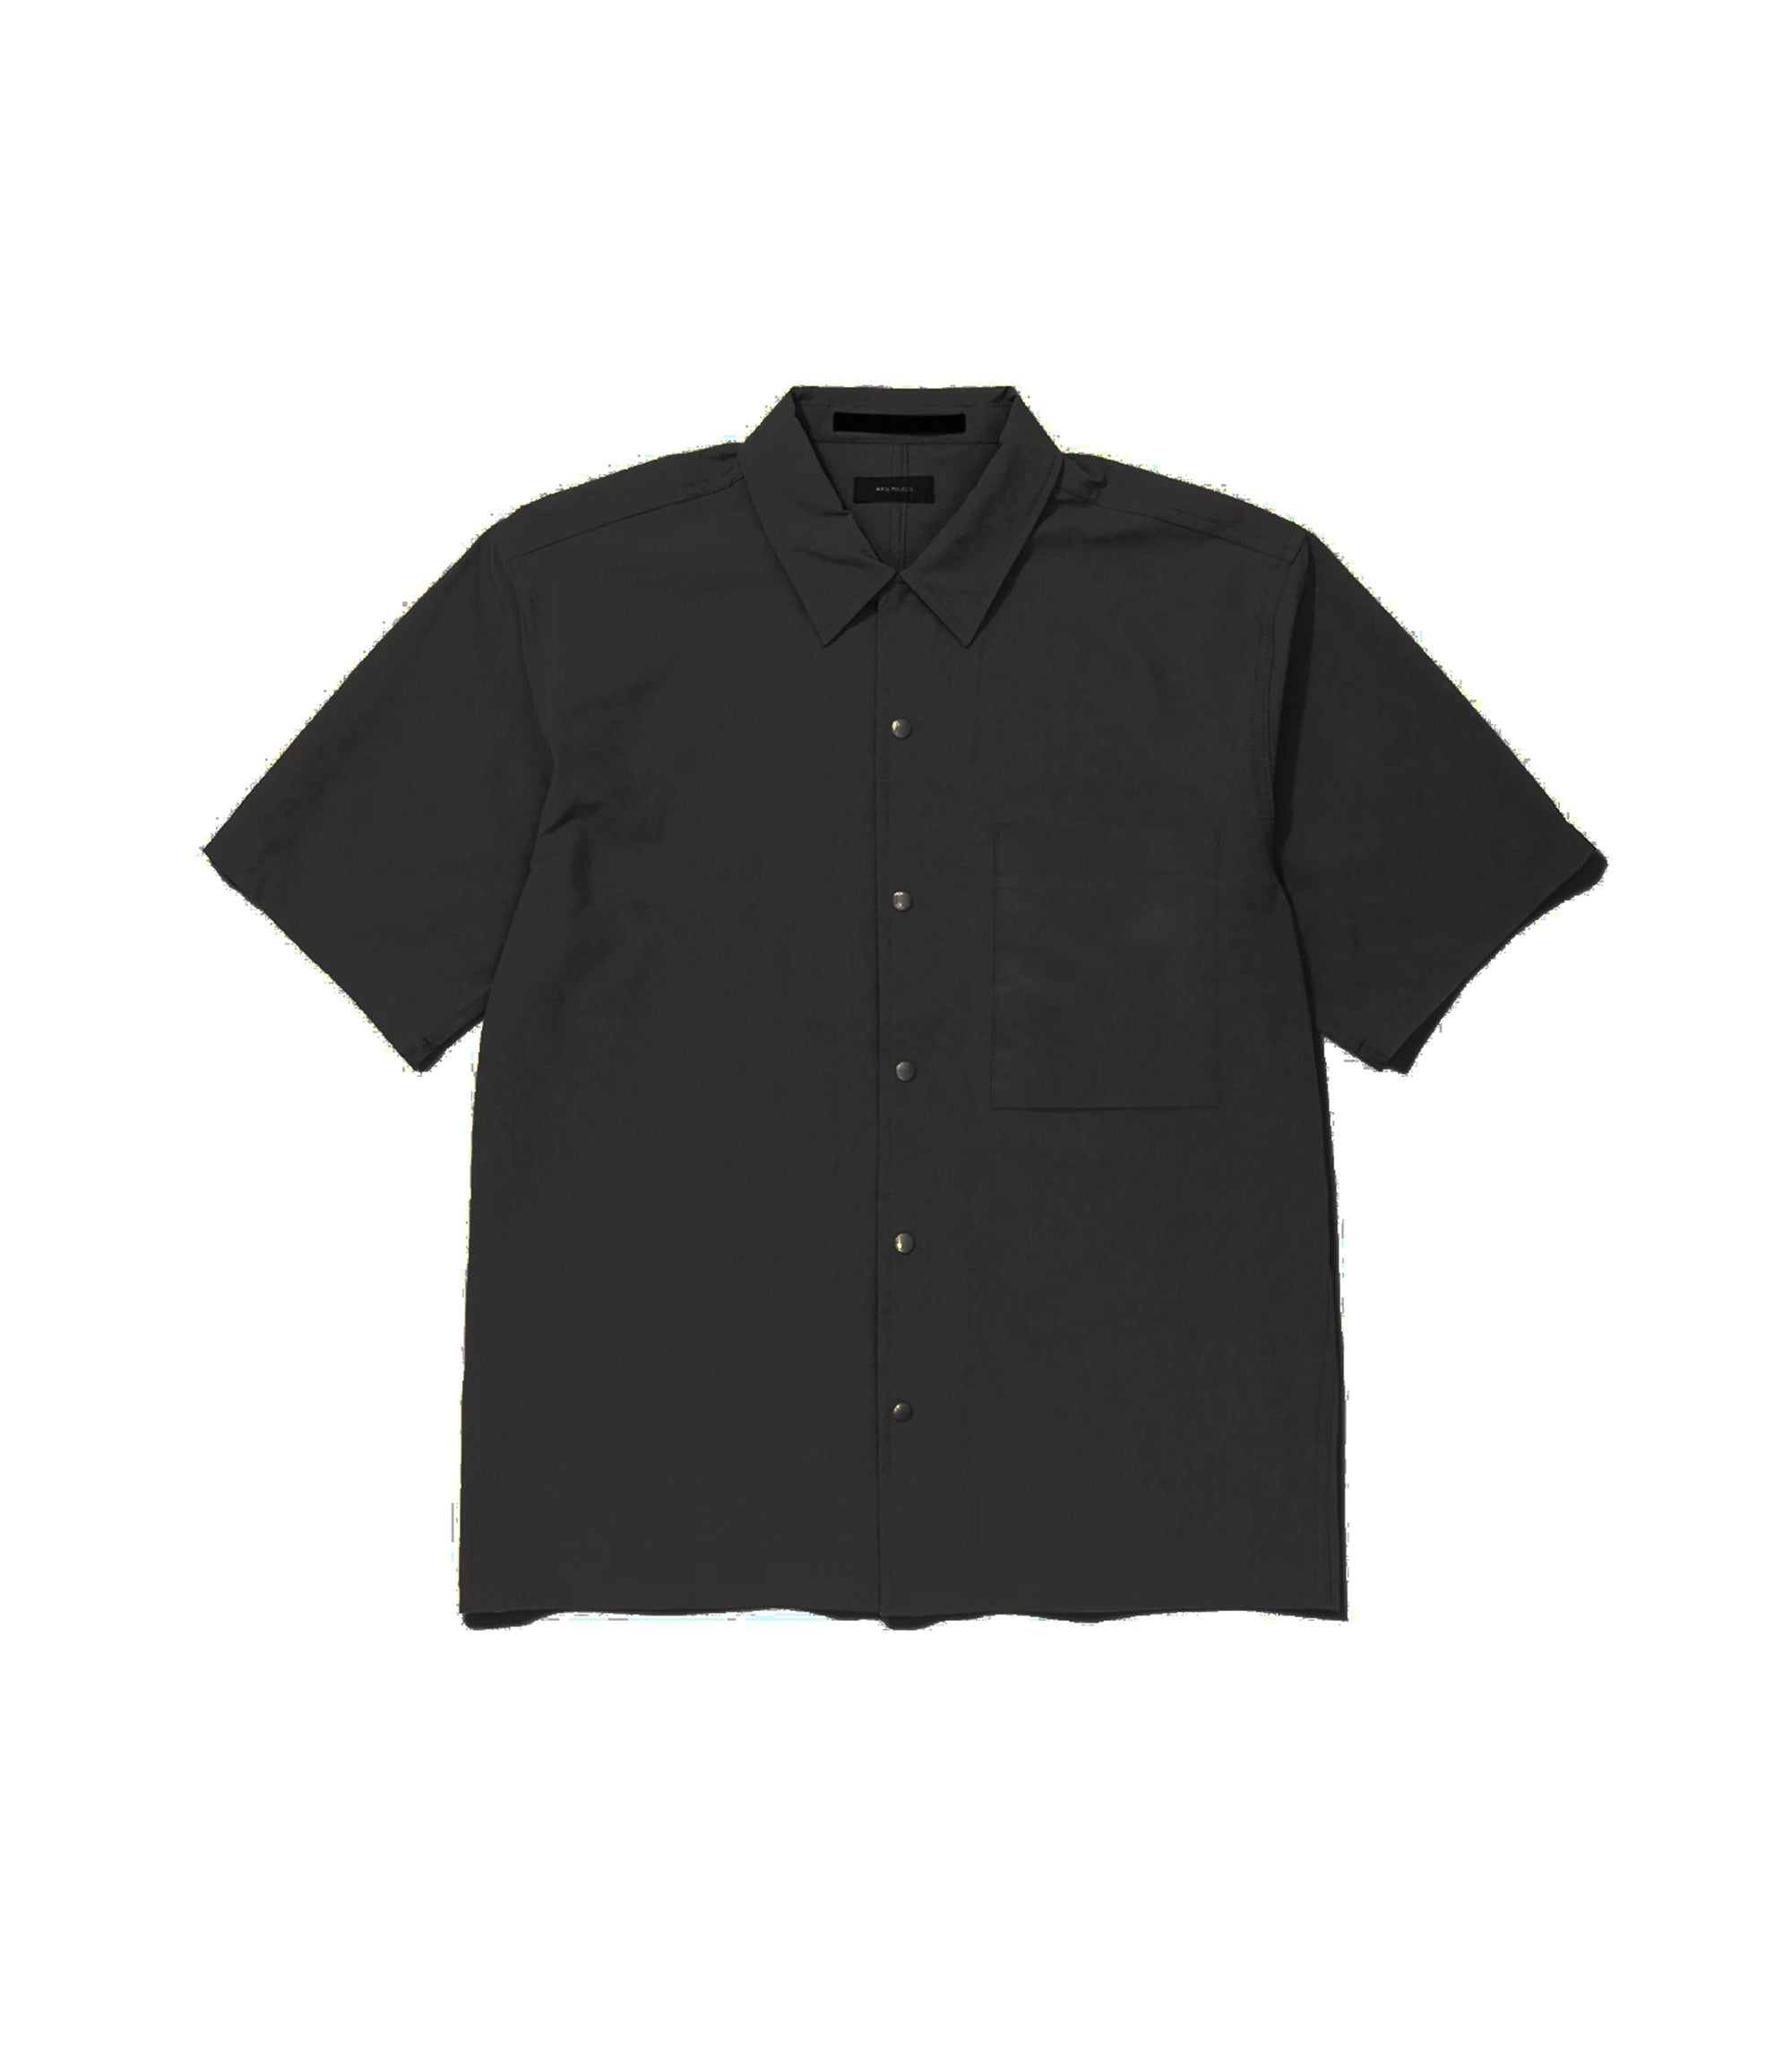 Carsten Travel Light S/S Shirt - Black